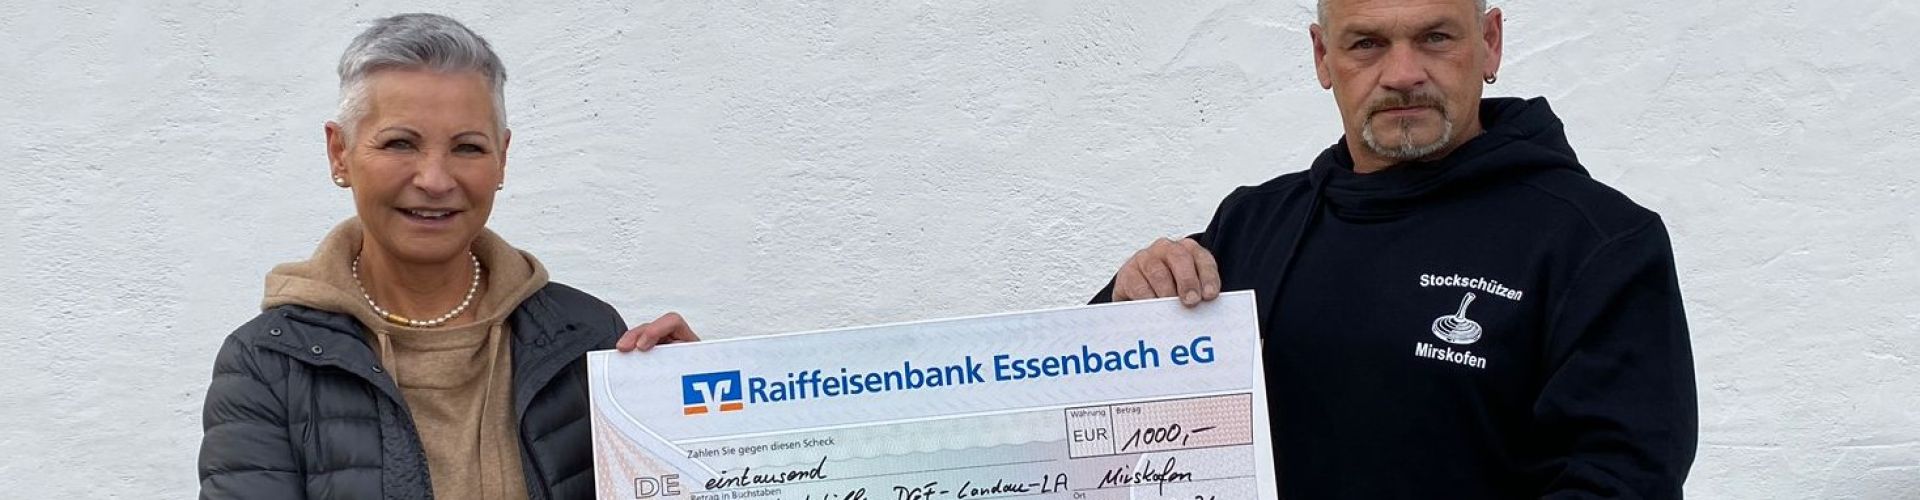 Ludwig Holmer, Abteilungsleiter der Stockschützen des DJK-SV Mirskofen, überreichte Ulrike Eckhart von der Kinderkrebshilfe Dingolfing-Landau-Landshut e.V. einen symbolischen Spendenscheck in Höhe von exakt 1.000 Euro. 